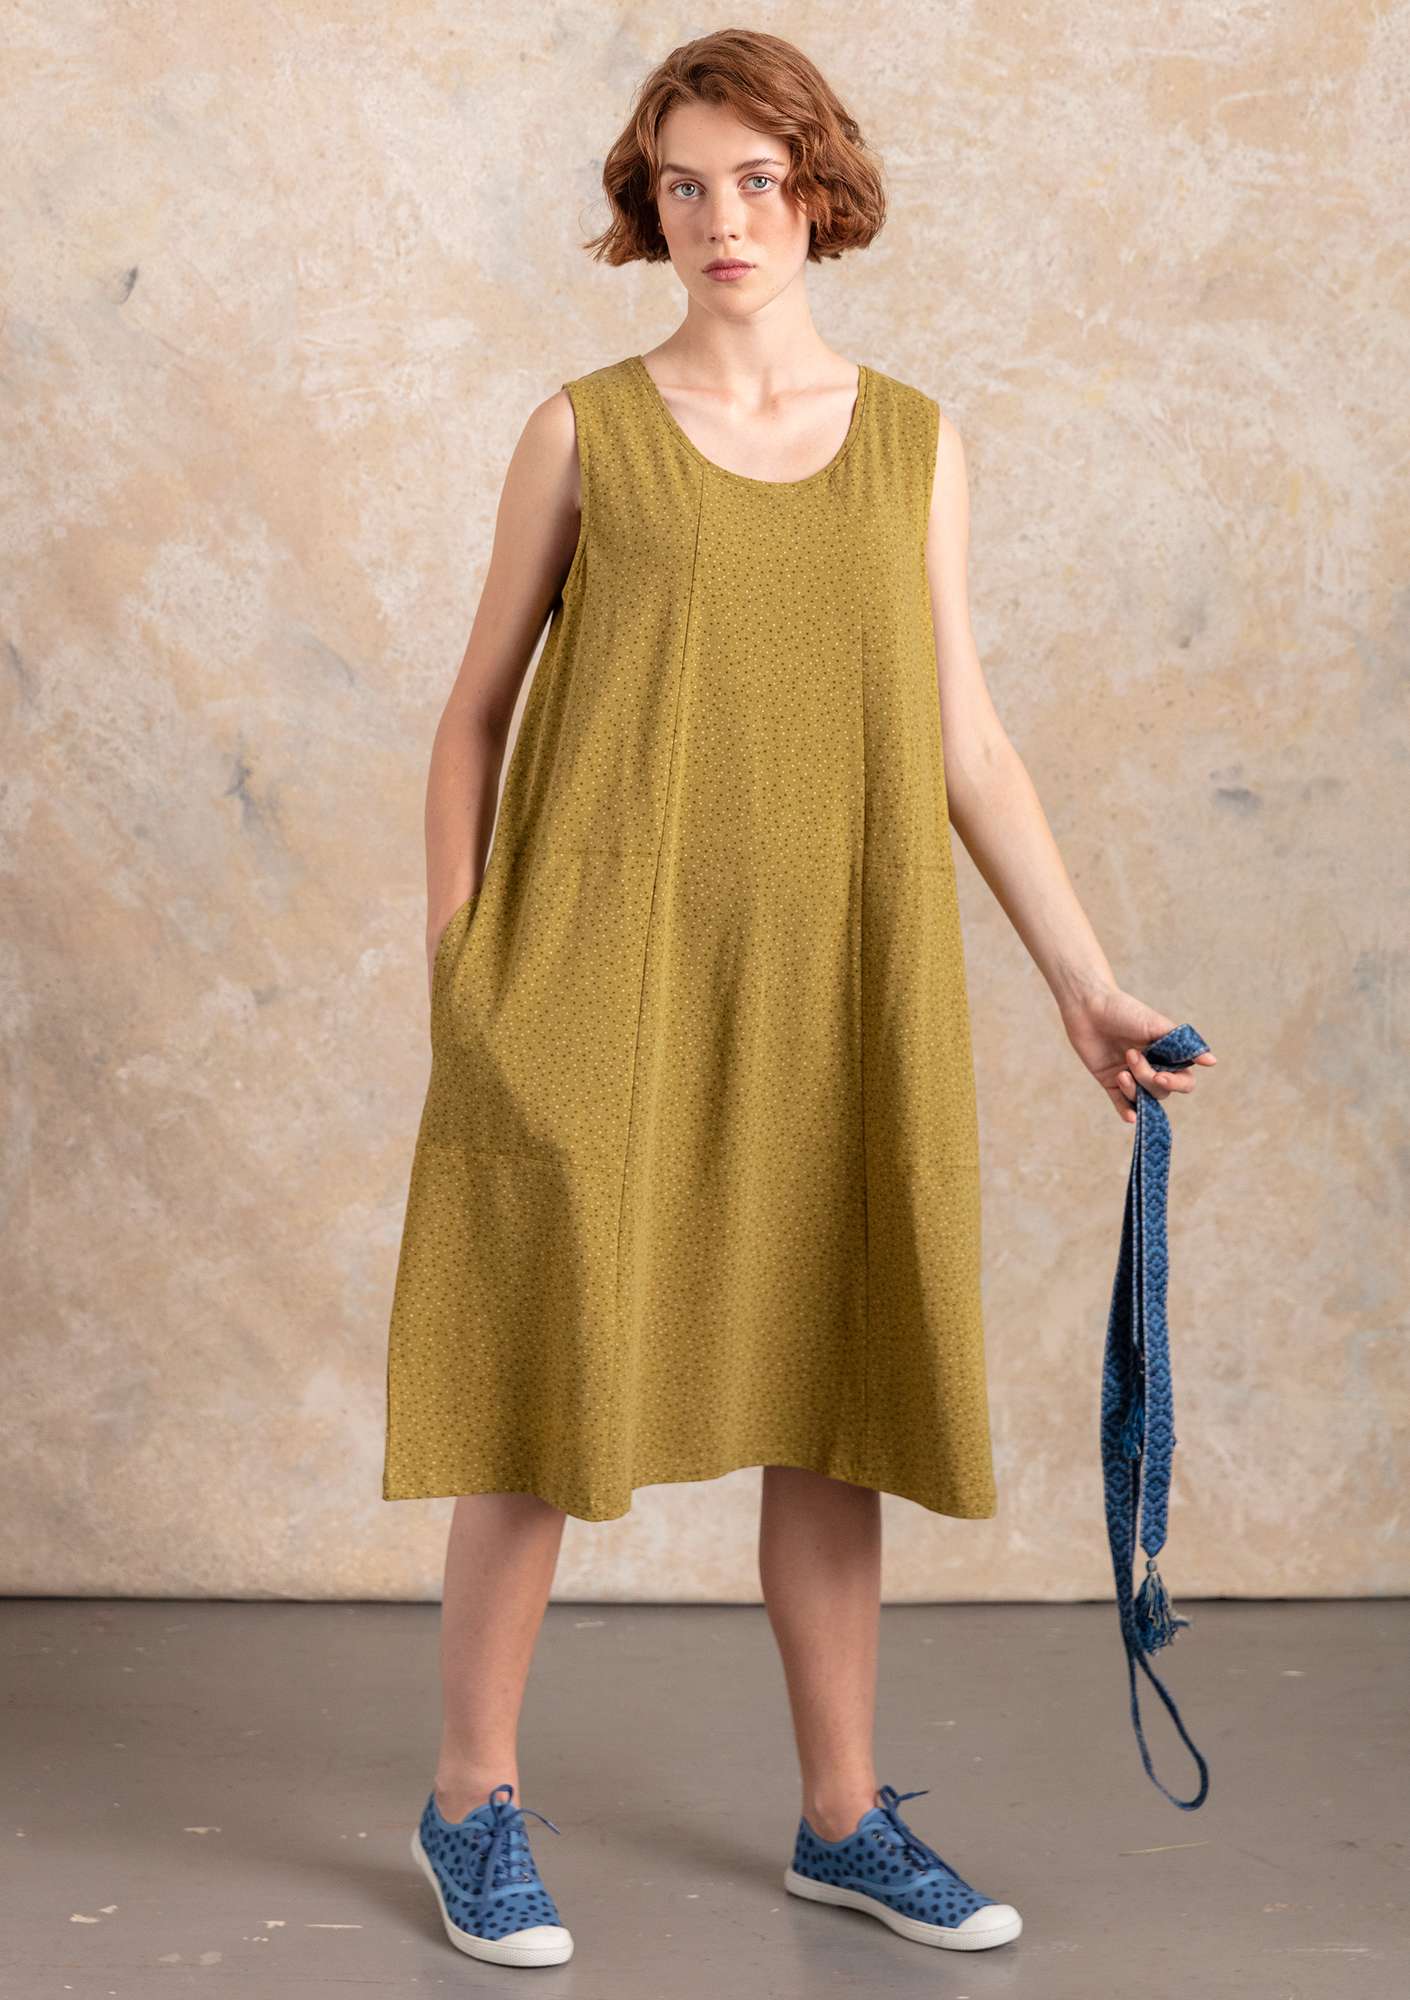 Trikåklänning  Iliana  i ekologisk bomull/elastan oliv/mönstrad